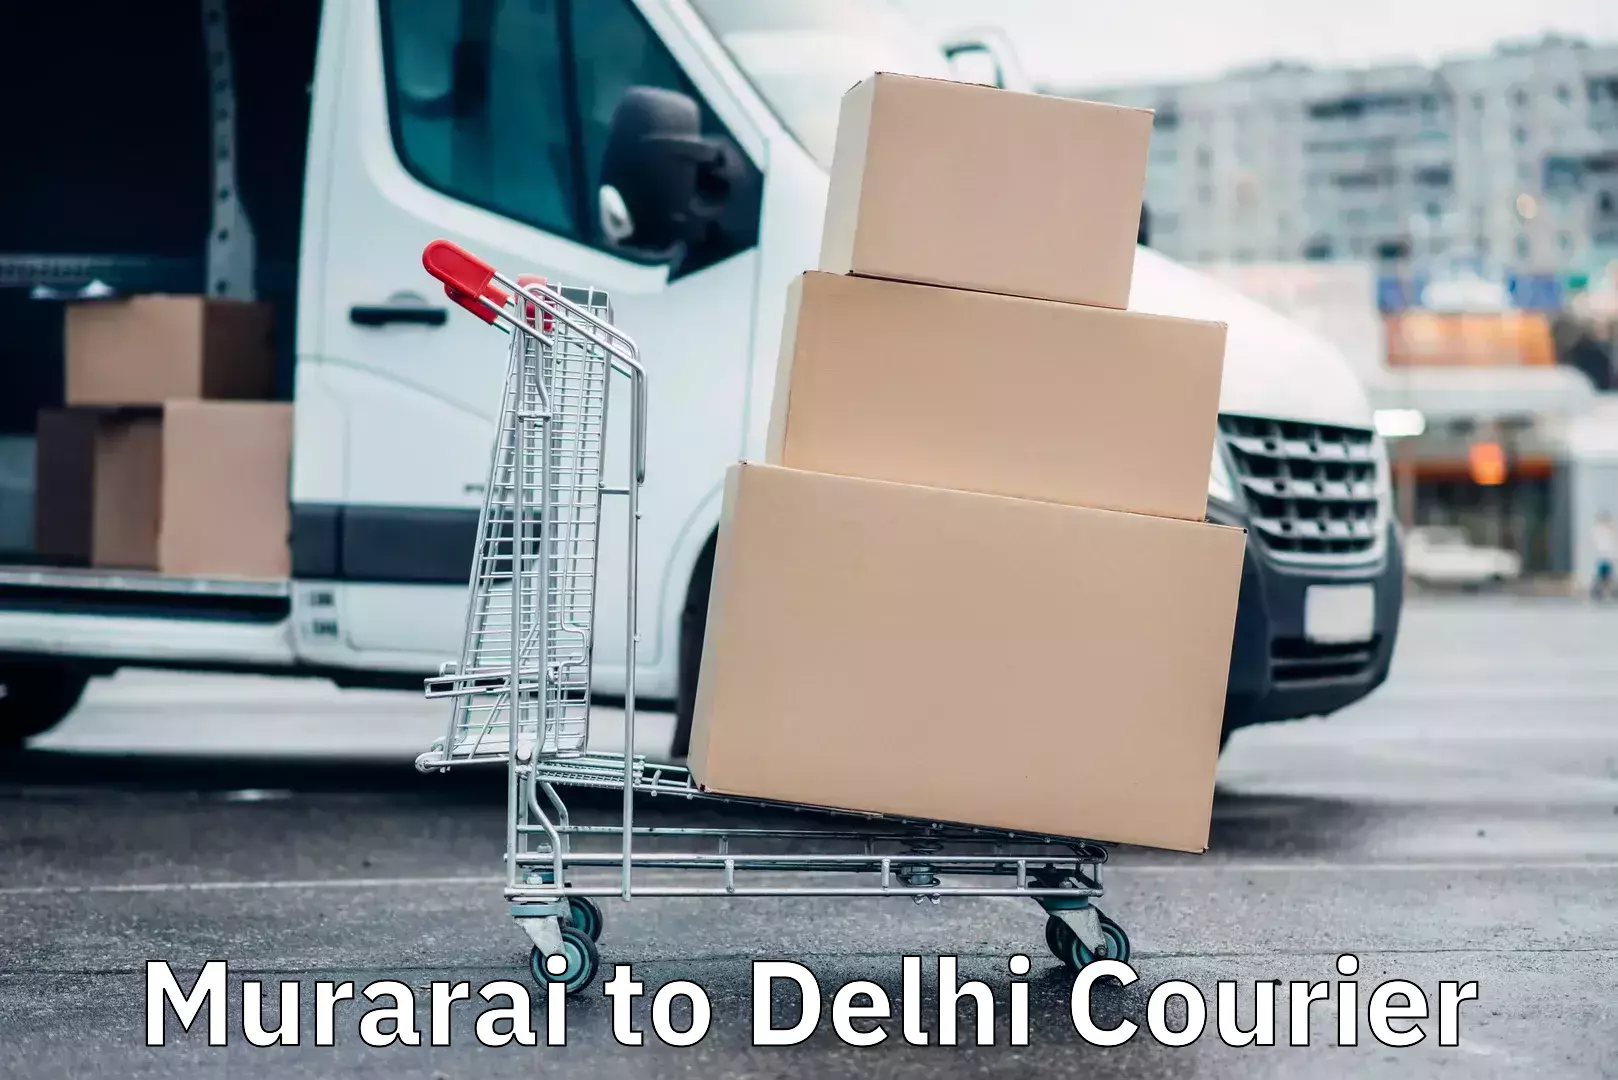 High-speed parcel service Murarai to Delhi